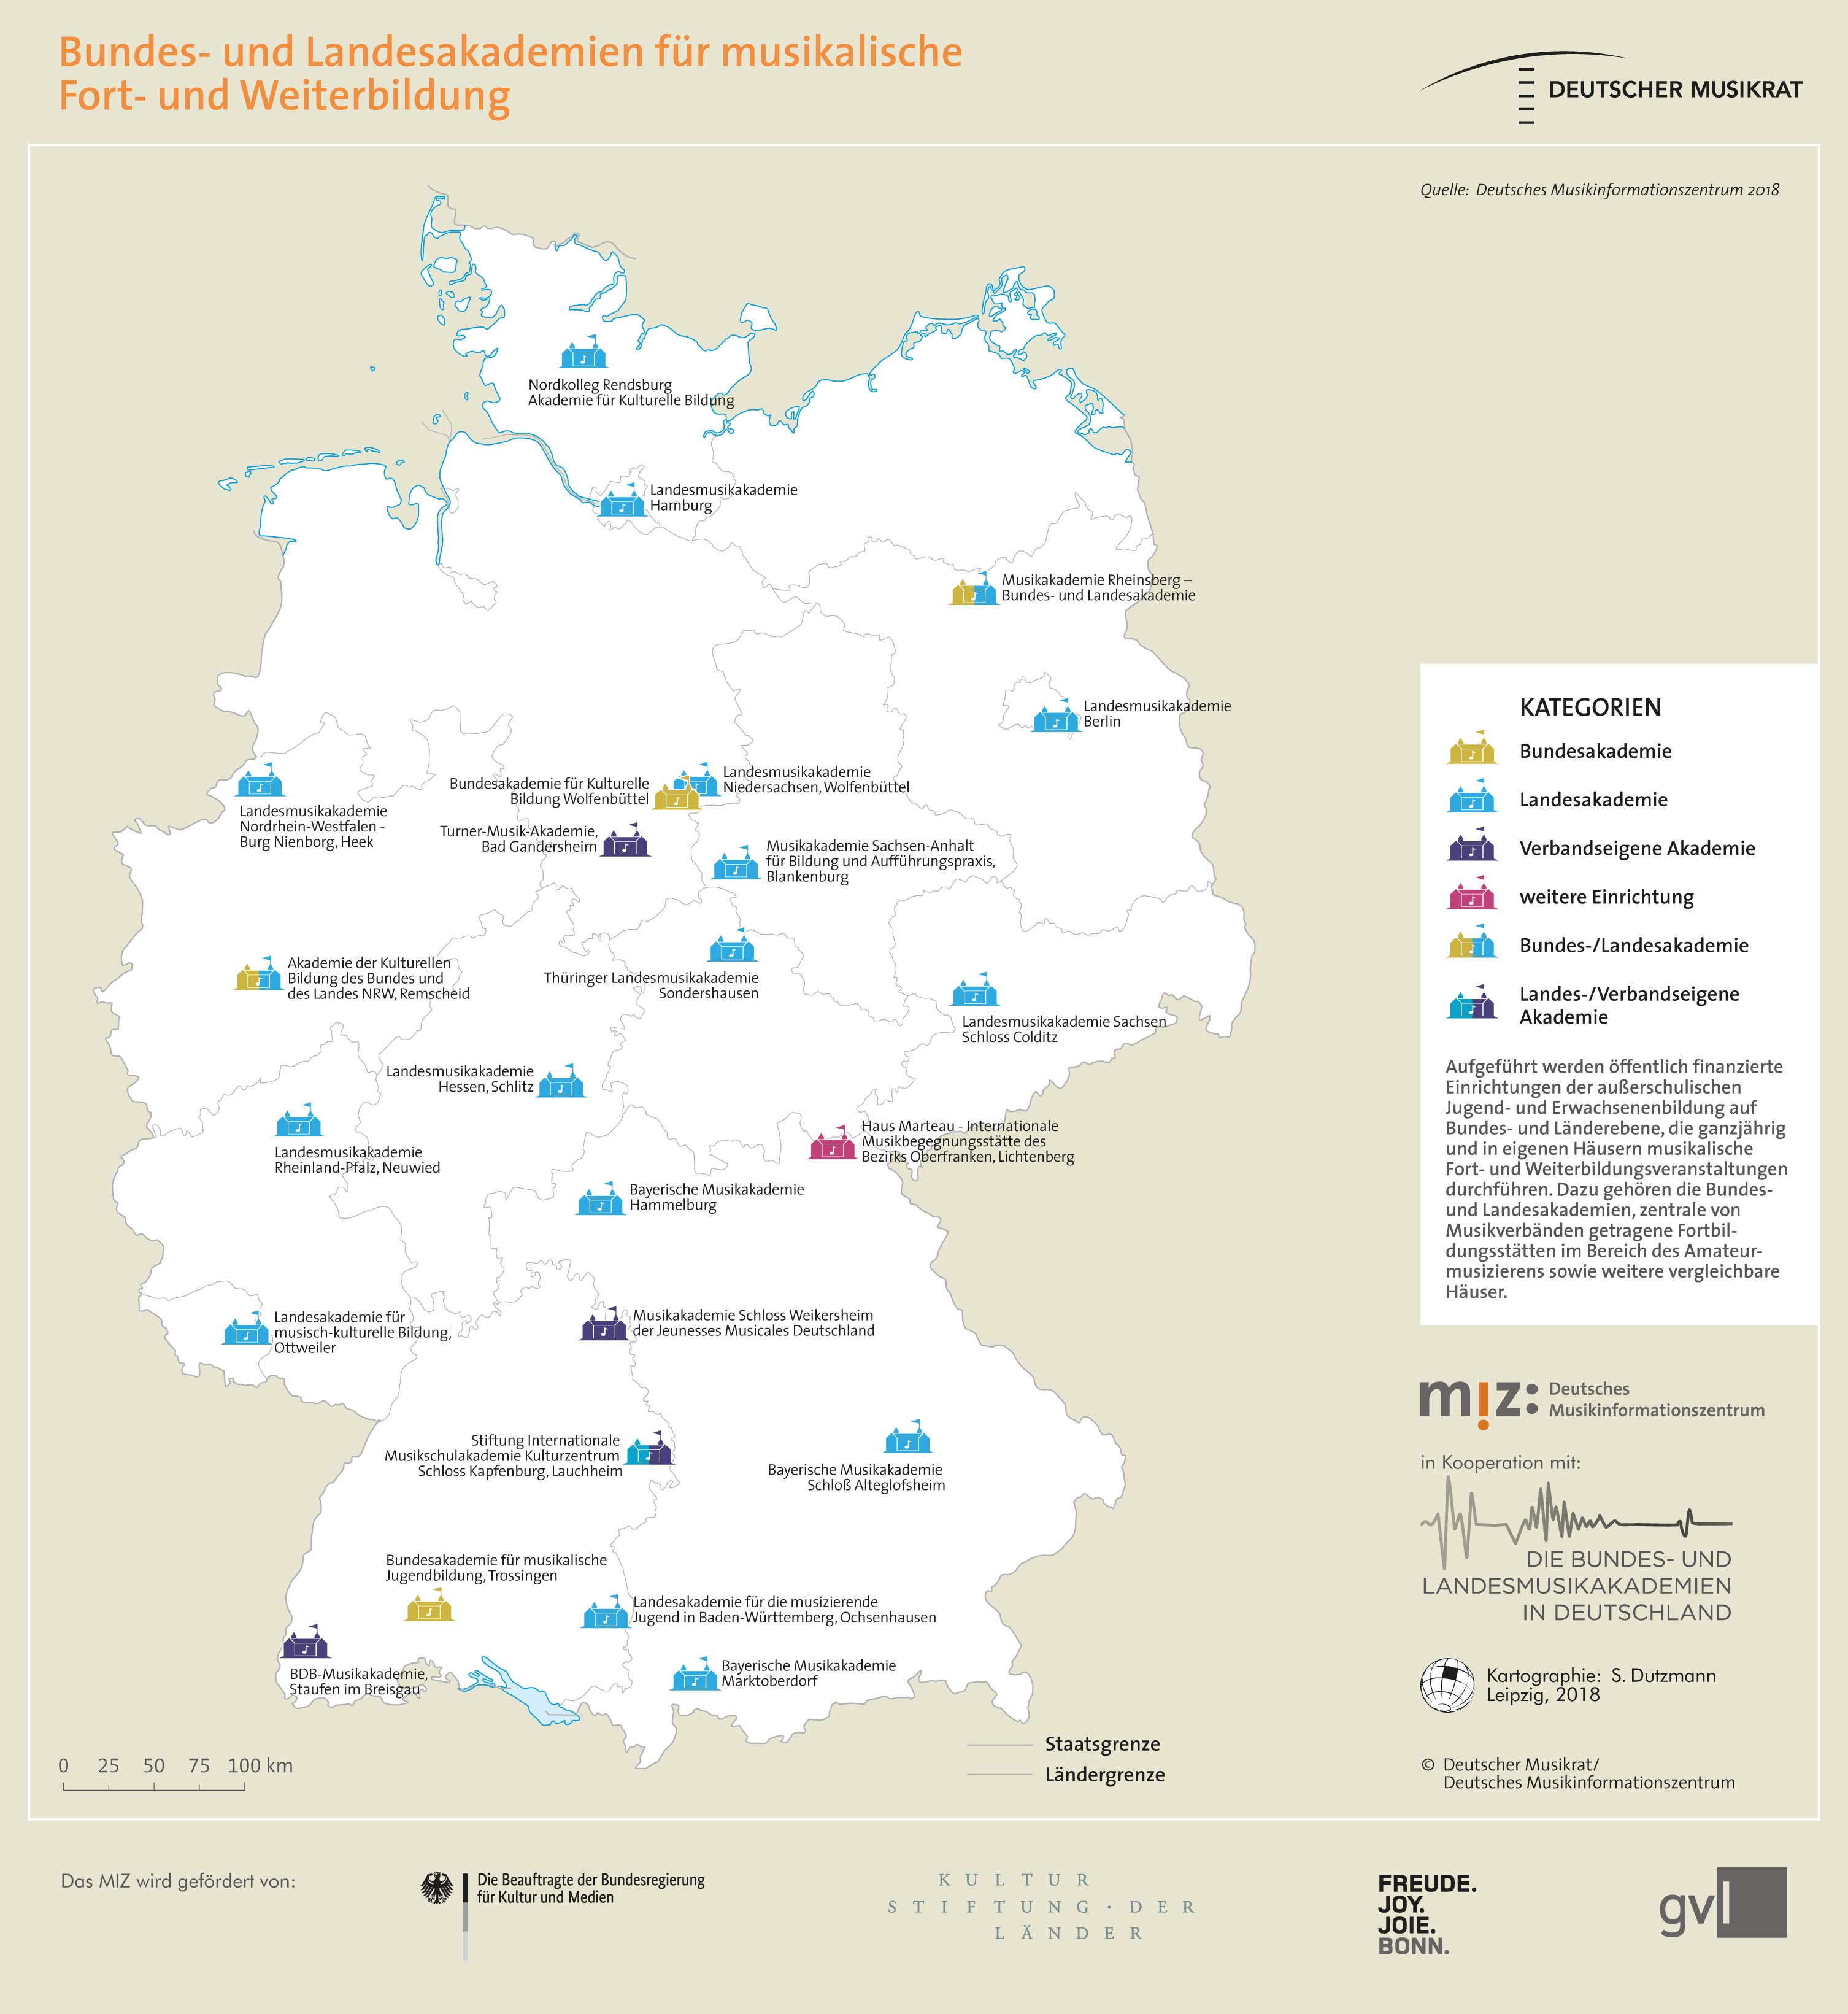 Topografie: Bundes- und Landesakademien für musikalische Fort- und Weiterbildung in Deutschland.